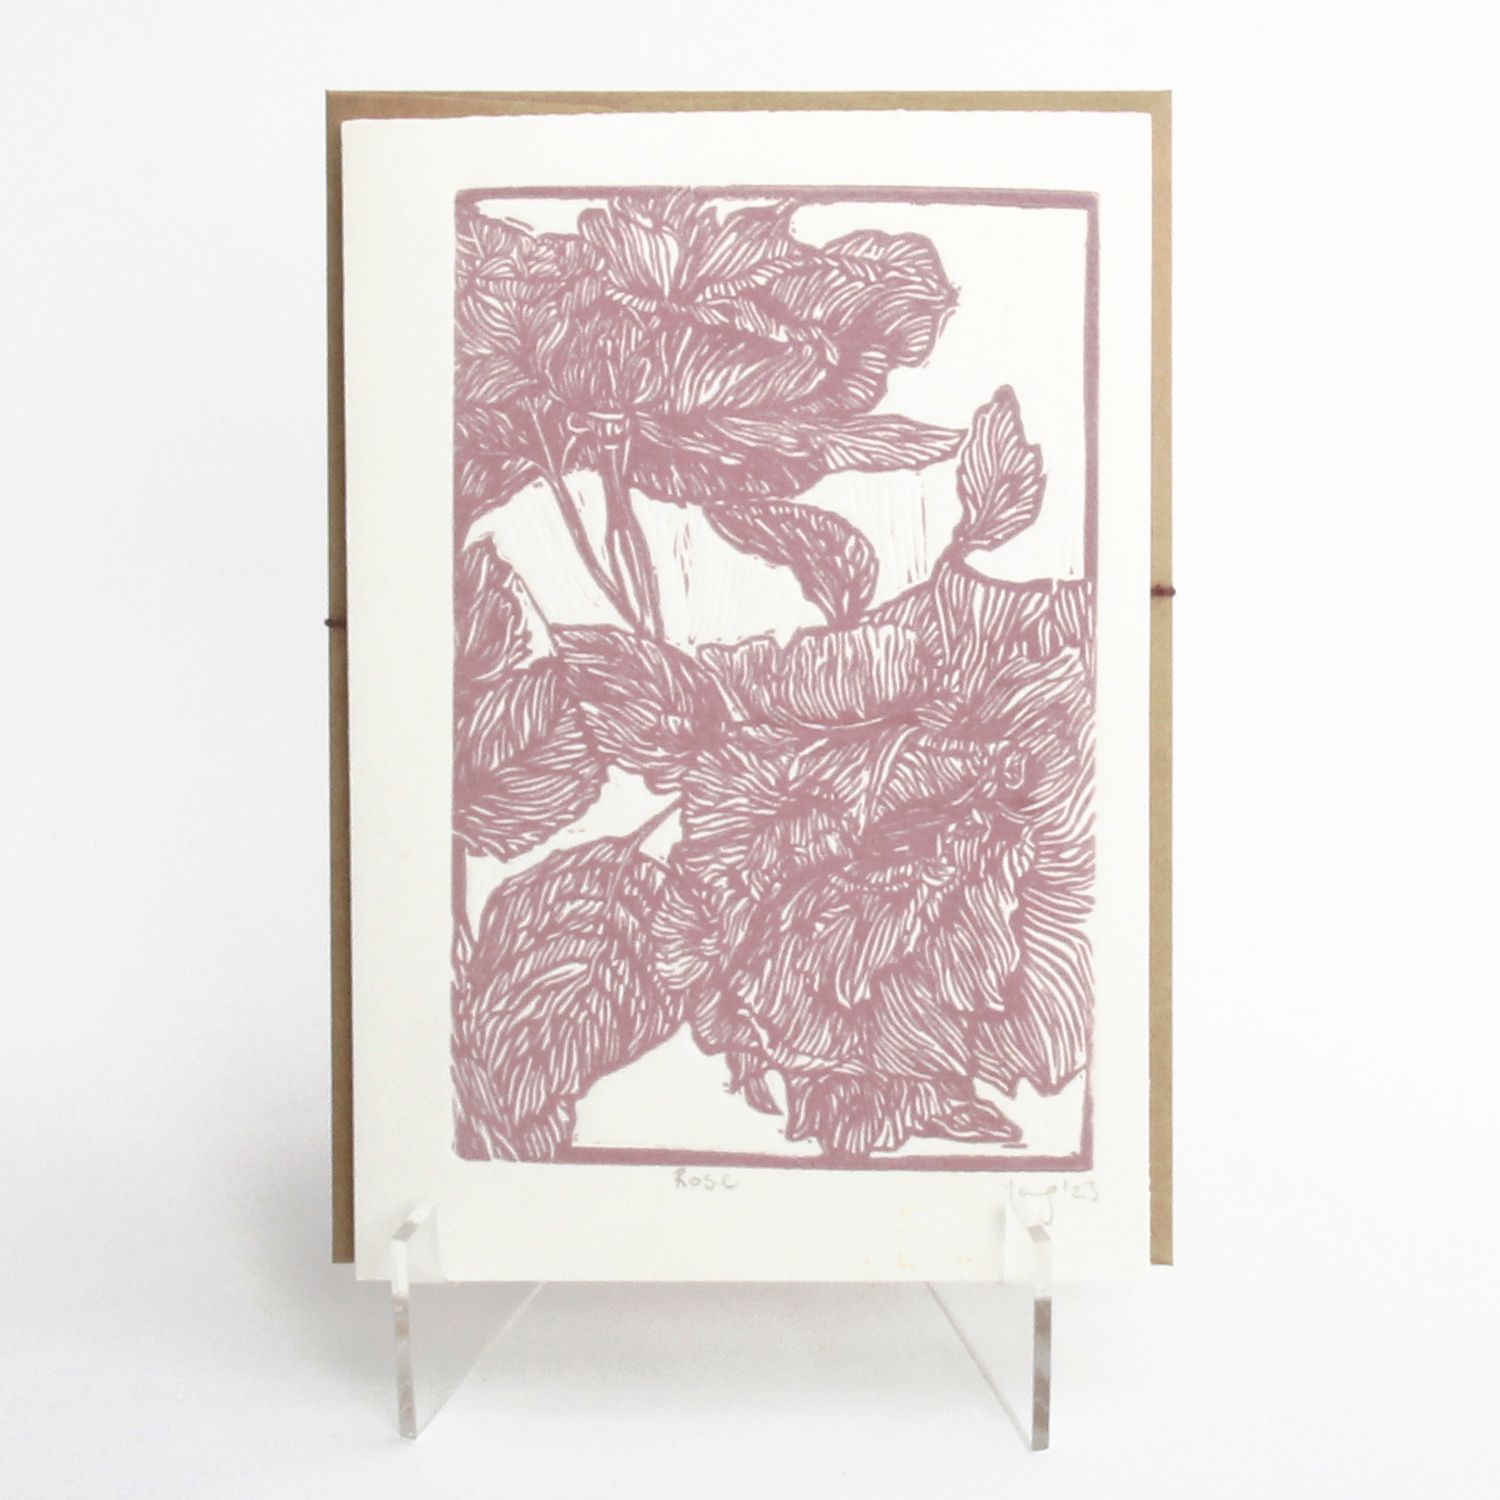 Jing Han Yang: Rose card Product Image 1 of 2